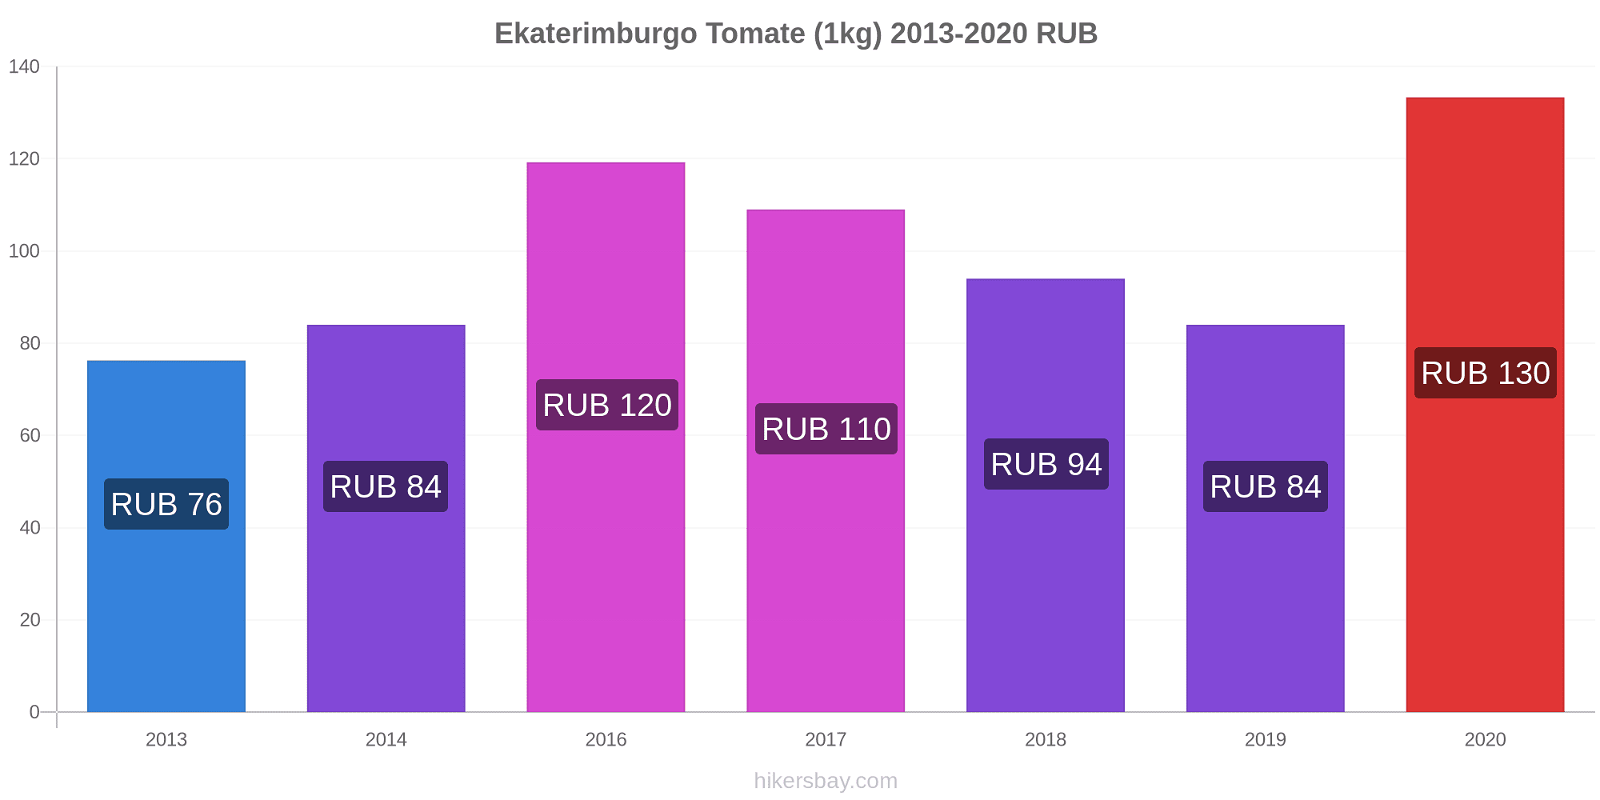 Ekaterimburgo cambios de precios Tomate (1kg) hikersbay.com